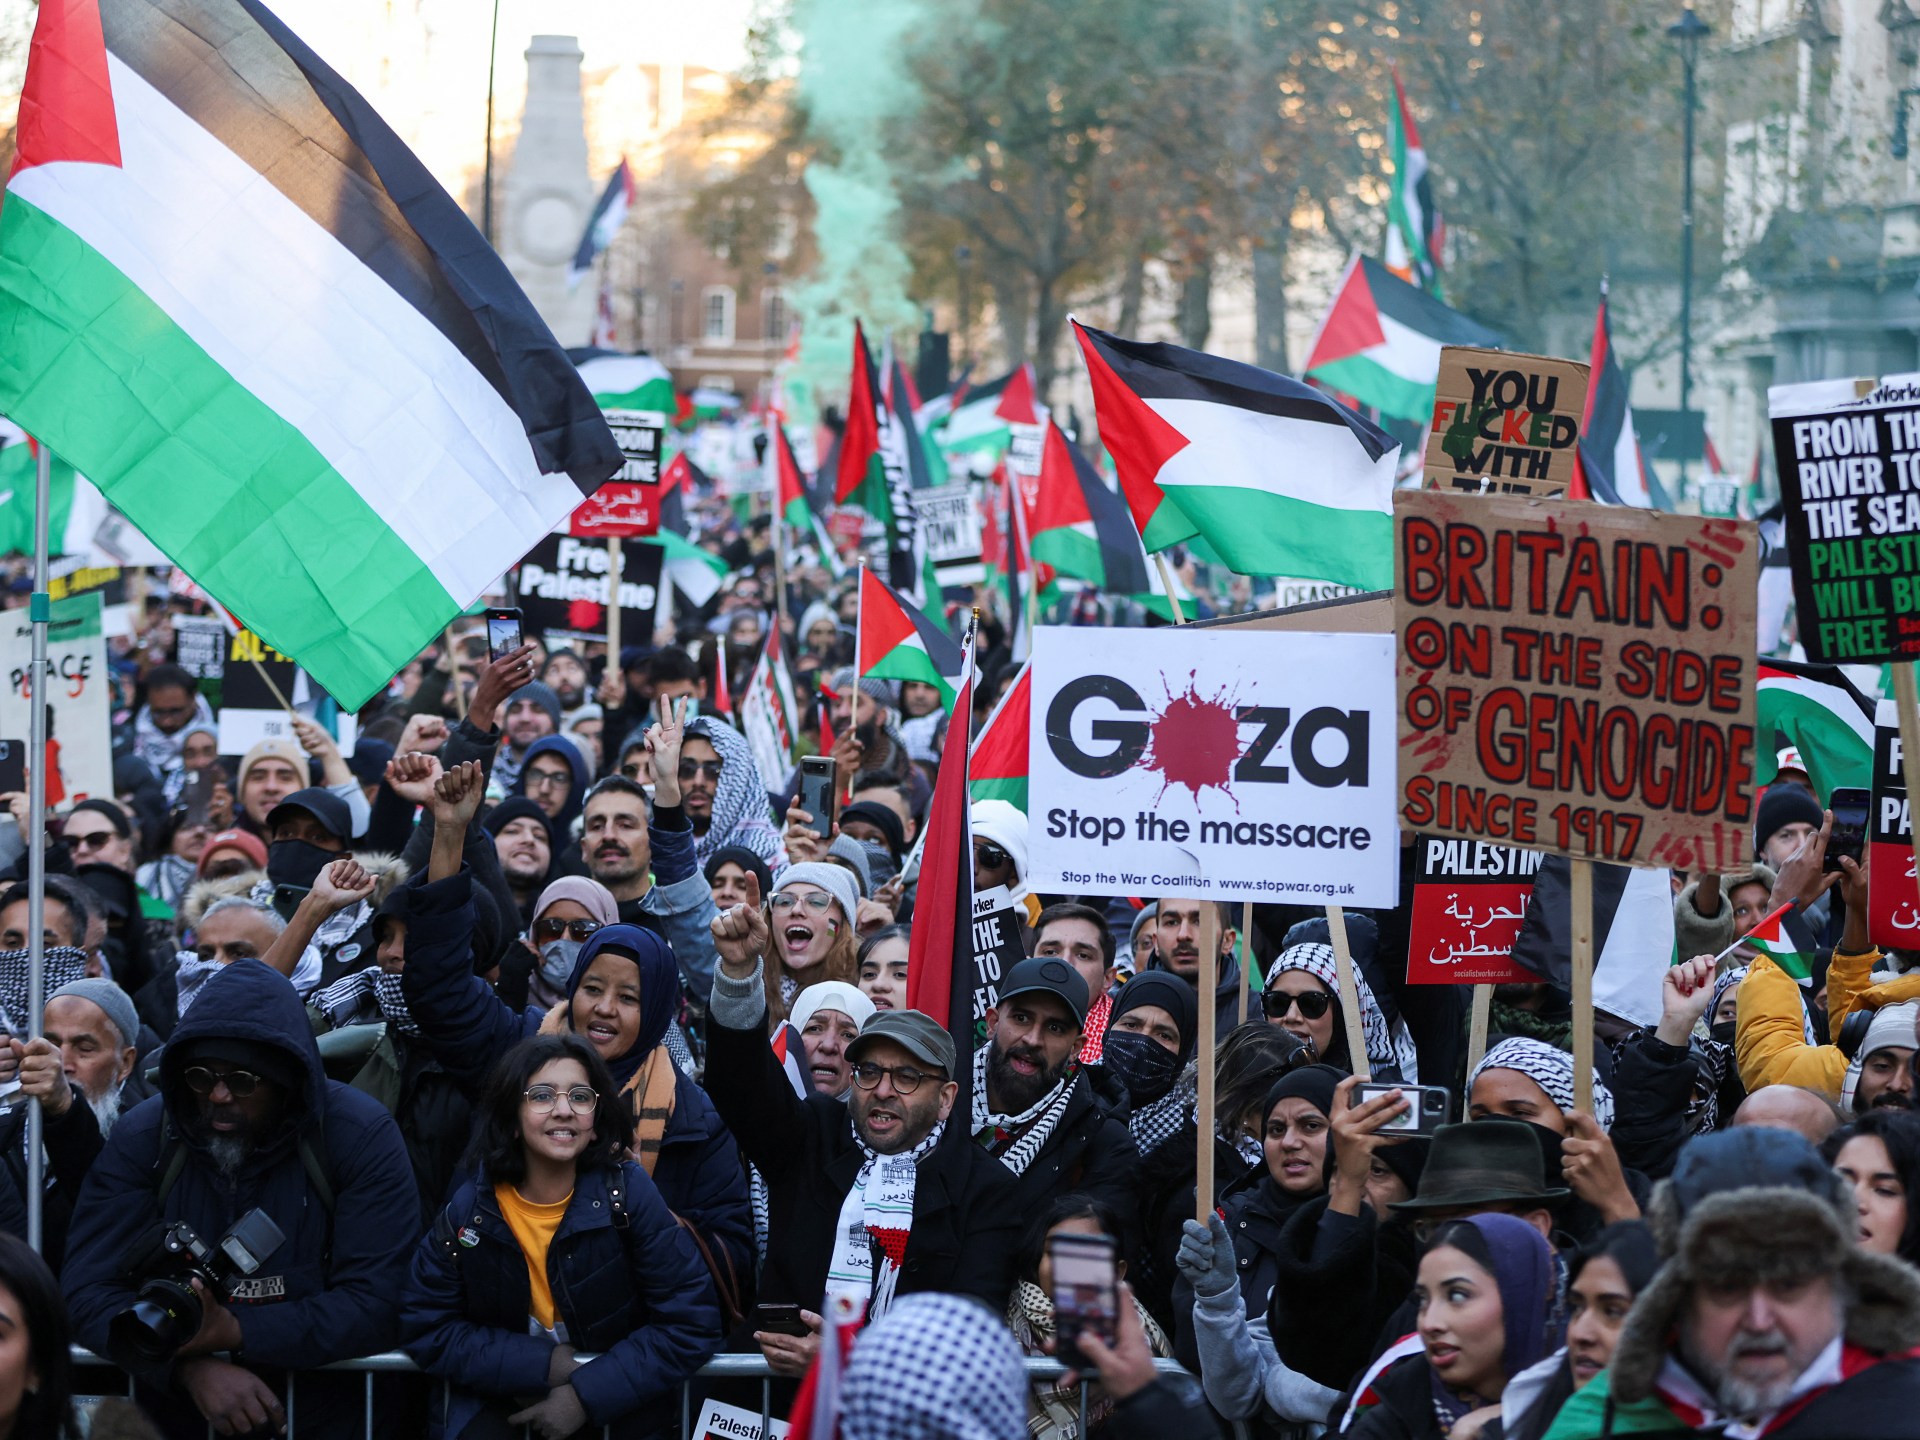 محتجون في لندن يتظاهرون دعما لفلسطين مطالبين بوقف دائم لإطلاق النار في غزة  أخبار الصراع الإسرائيلي الفلسطيني